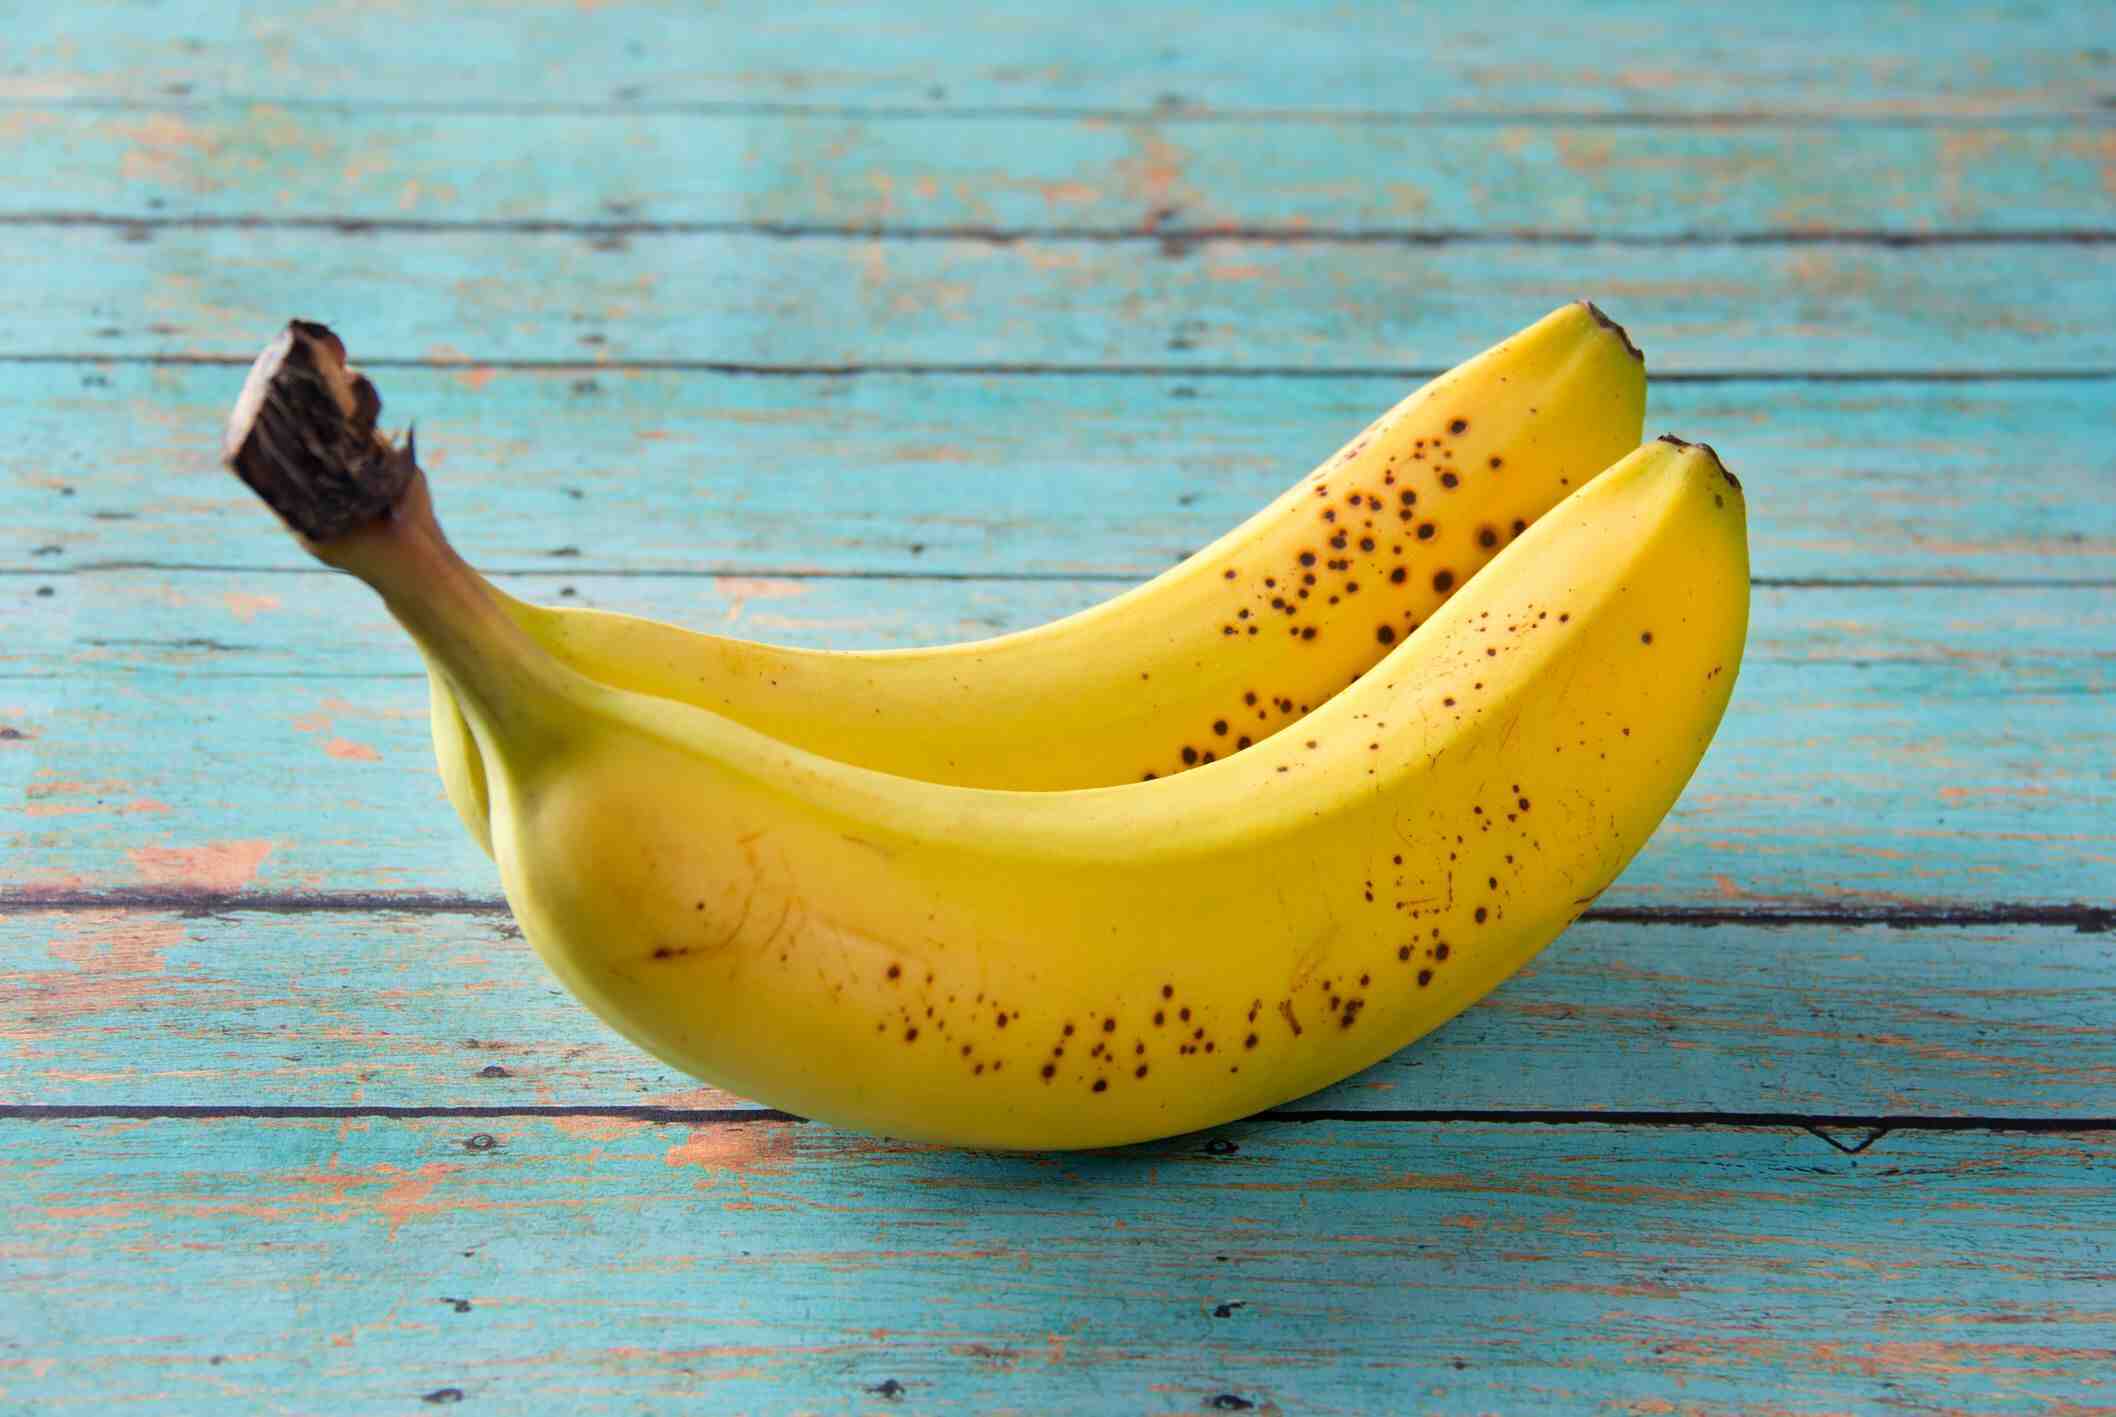 Les bananes sont-elles bonnes pour les diabétiques?